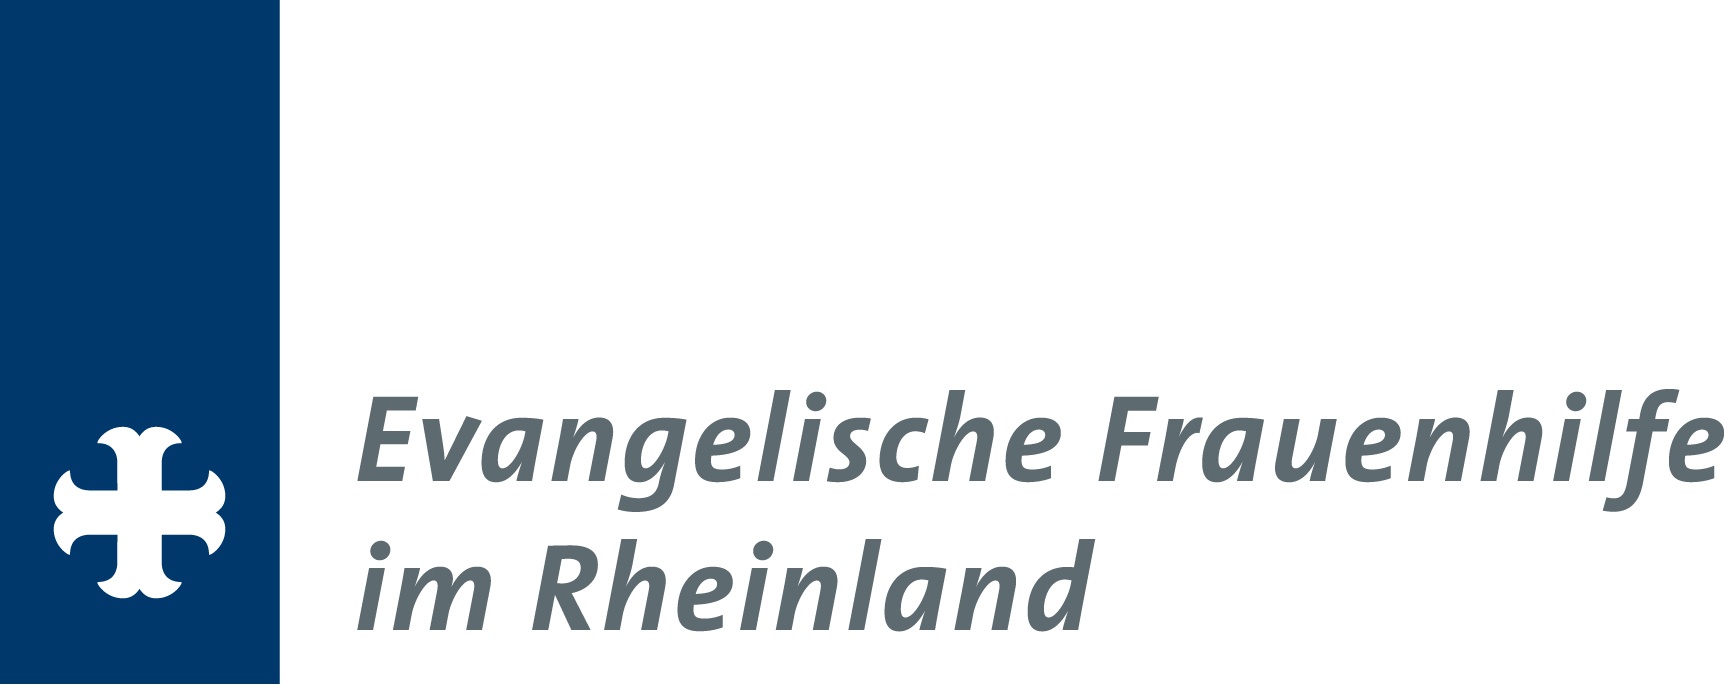 Landesverband der Evangelischen Frauenhilfe im Rheinland